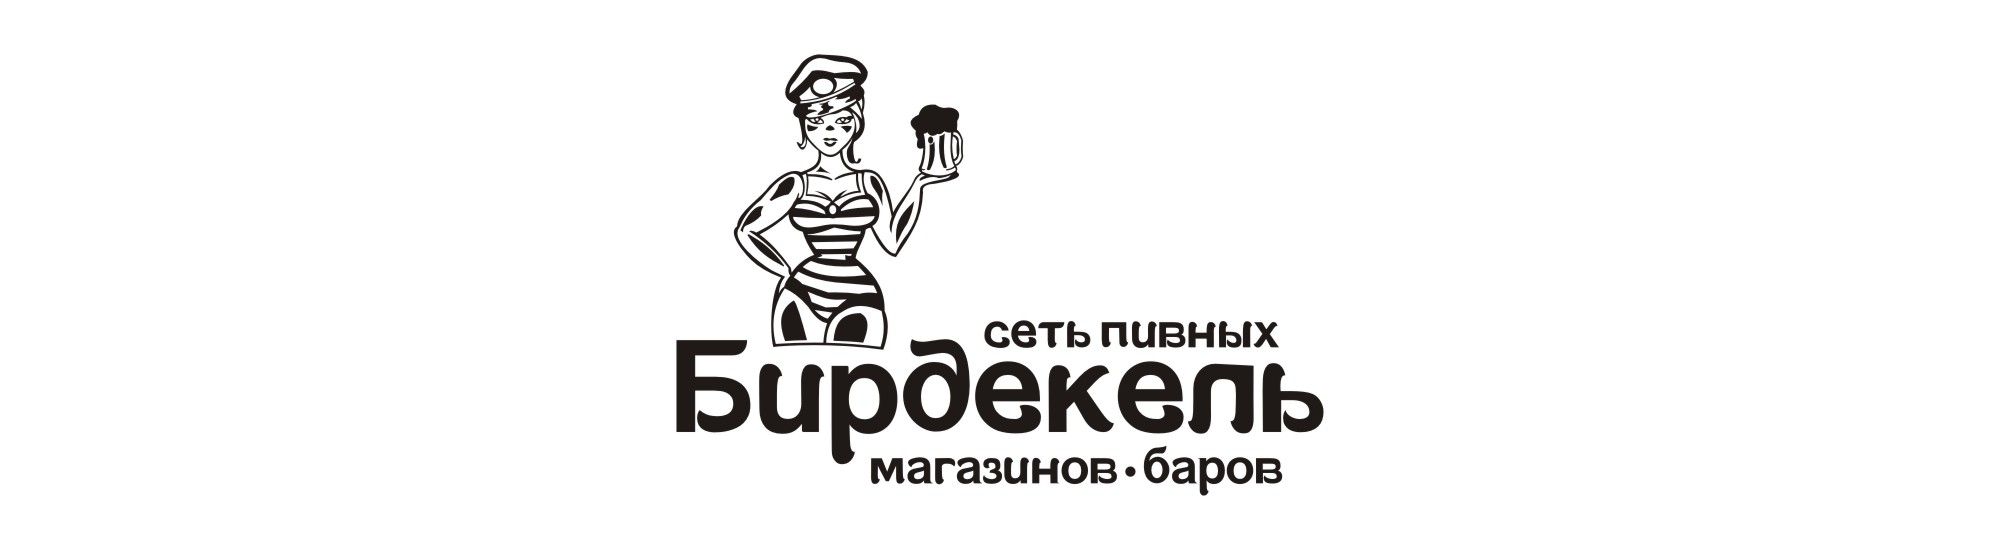 Лого и фирменный стиль для Бирдекель - дизайнер chesnokov55